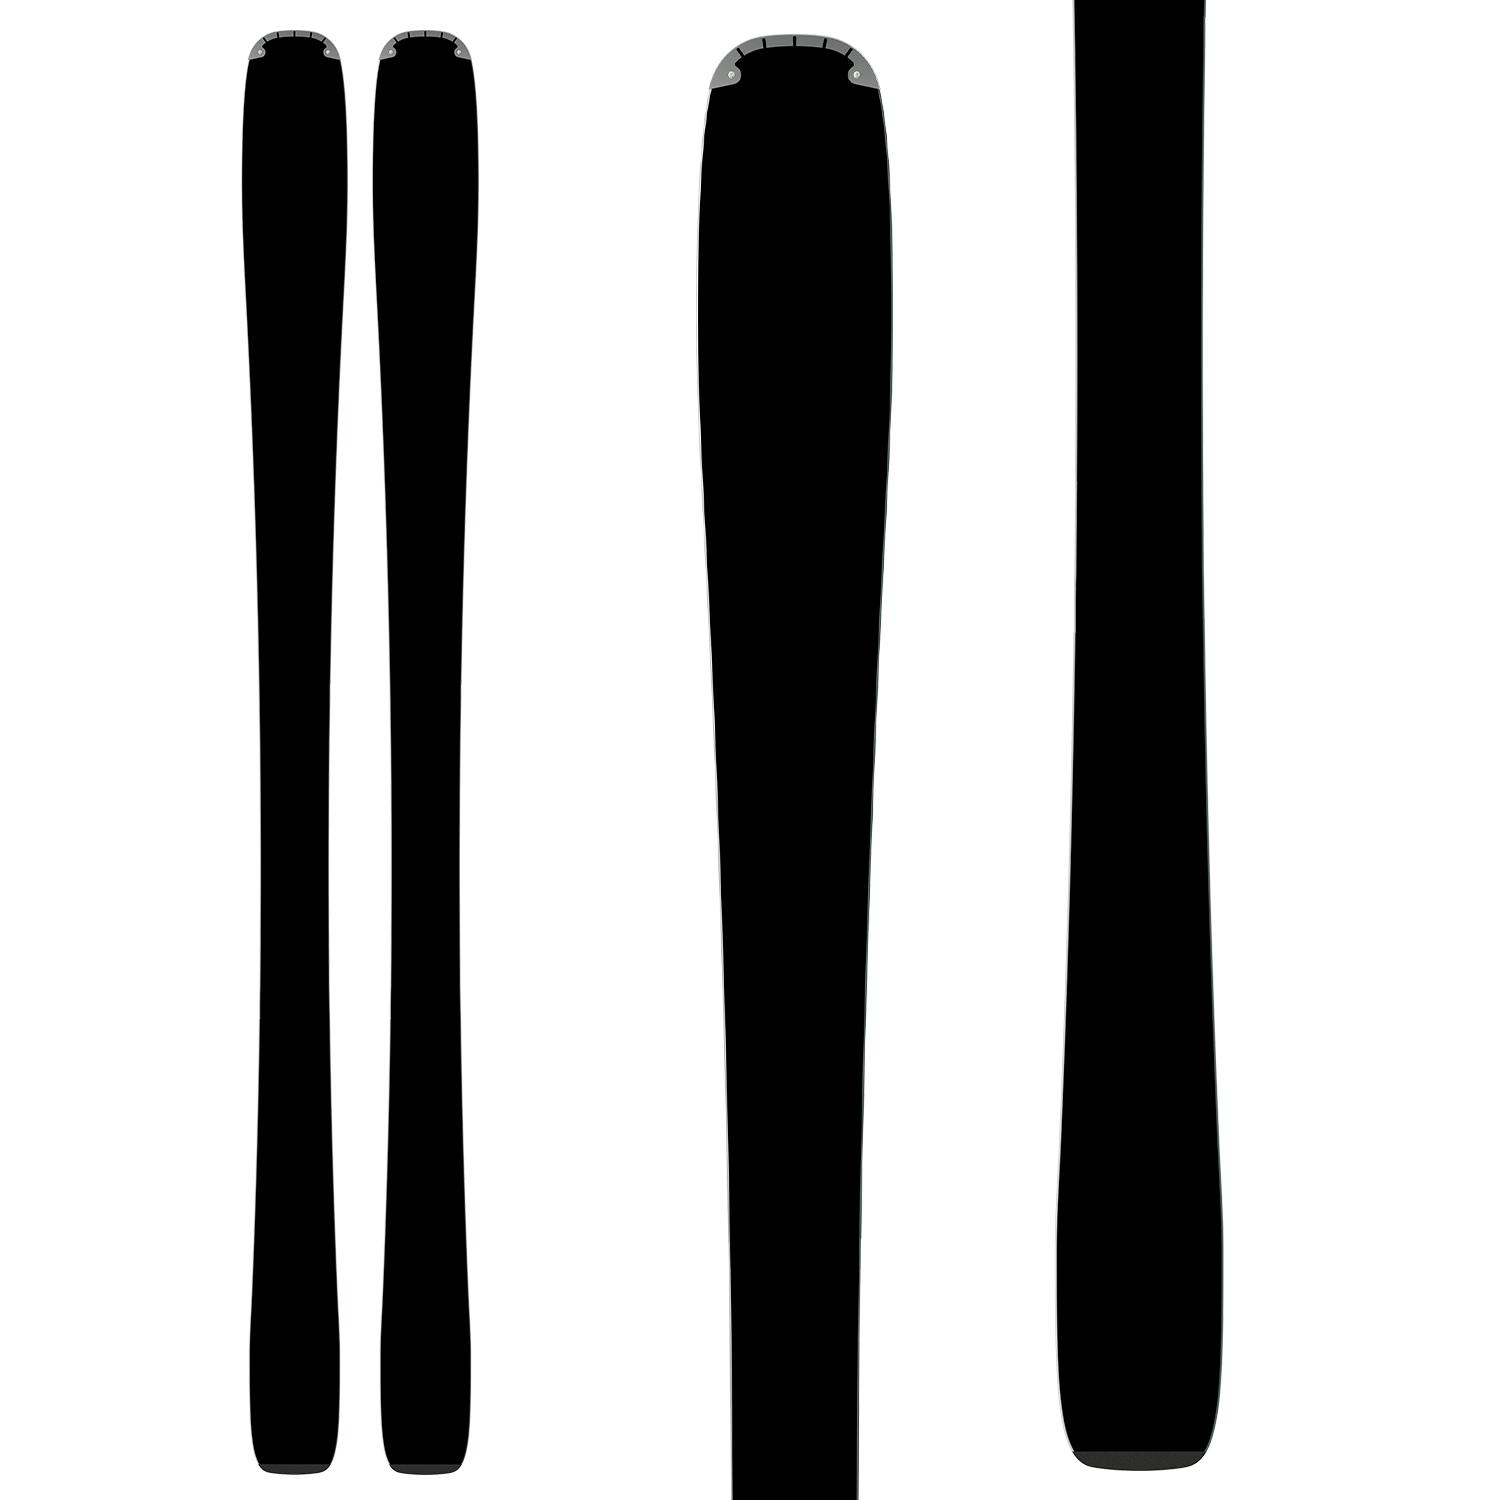 Salomon Stance W 80 Skis + M10 GW Bindings · Women's · 2023